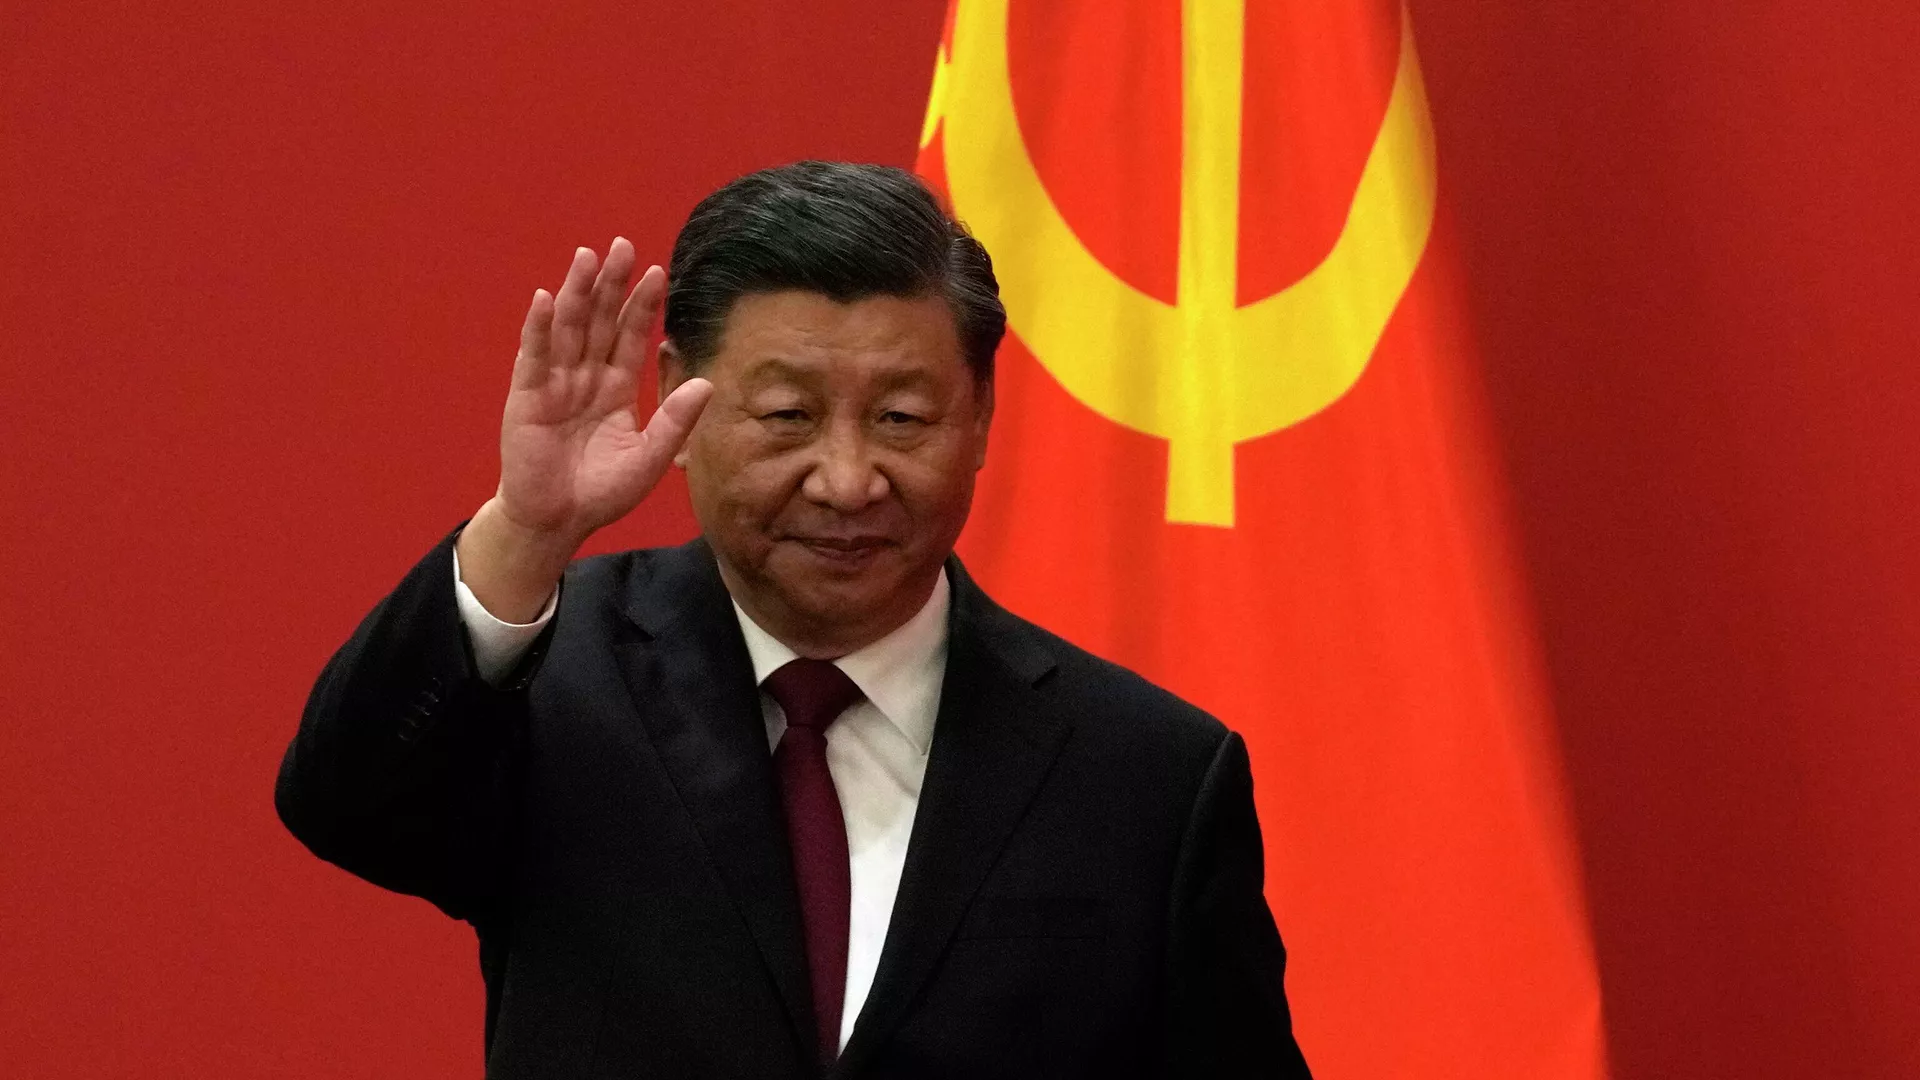 الرئيس الصيني يعرب عن استعداد بلاده للوقوف بجانب روسيا لحماية القانون الدولي